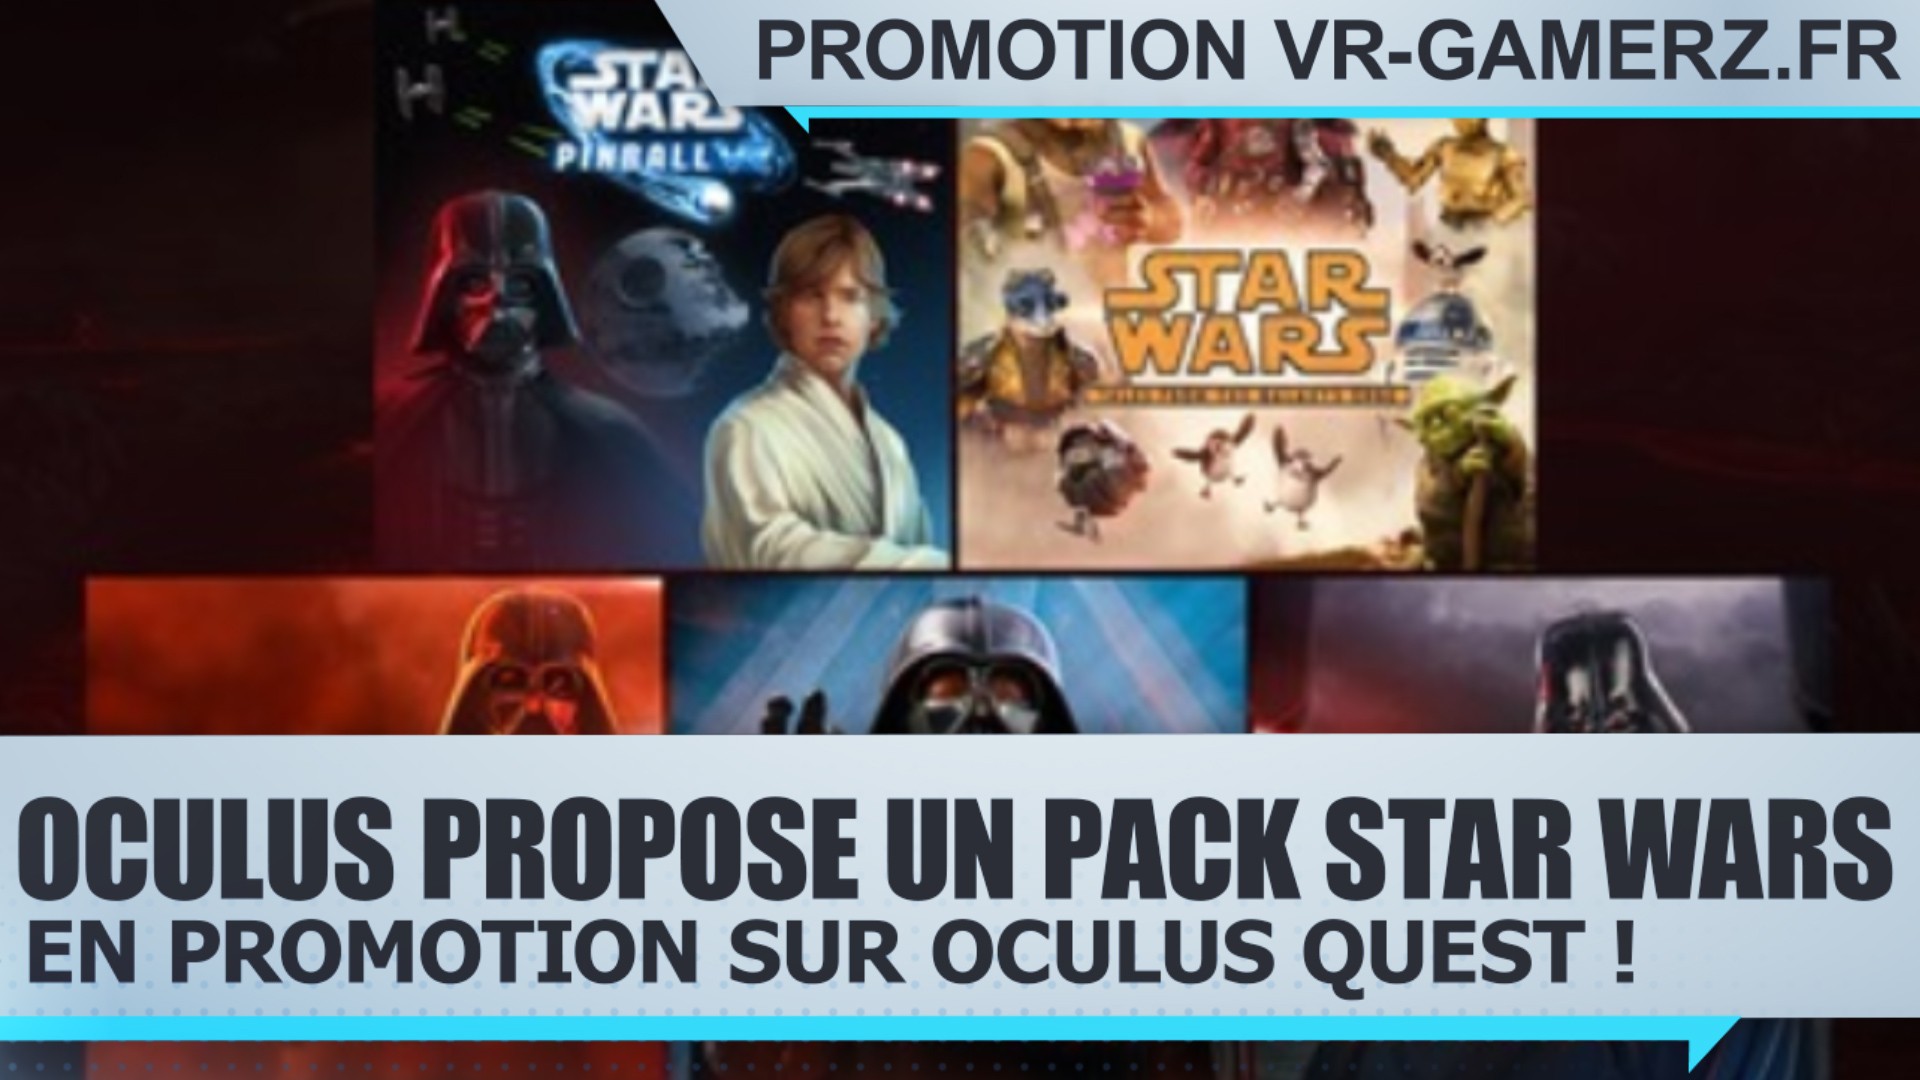 Oculus propose un pack Star Wars en promotion sur Oculus quest !